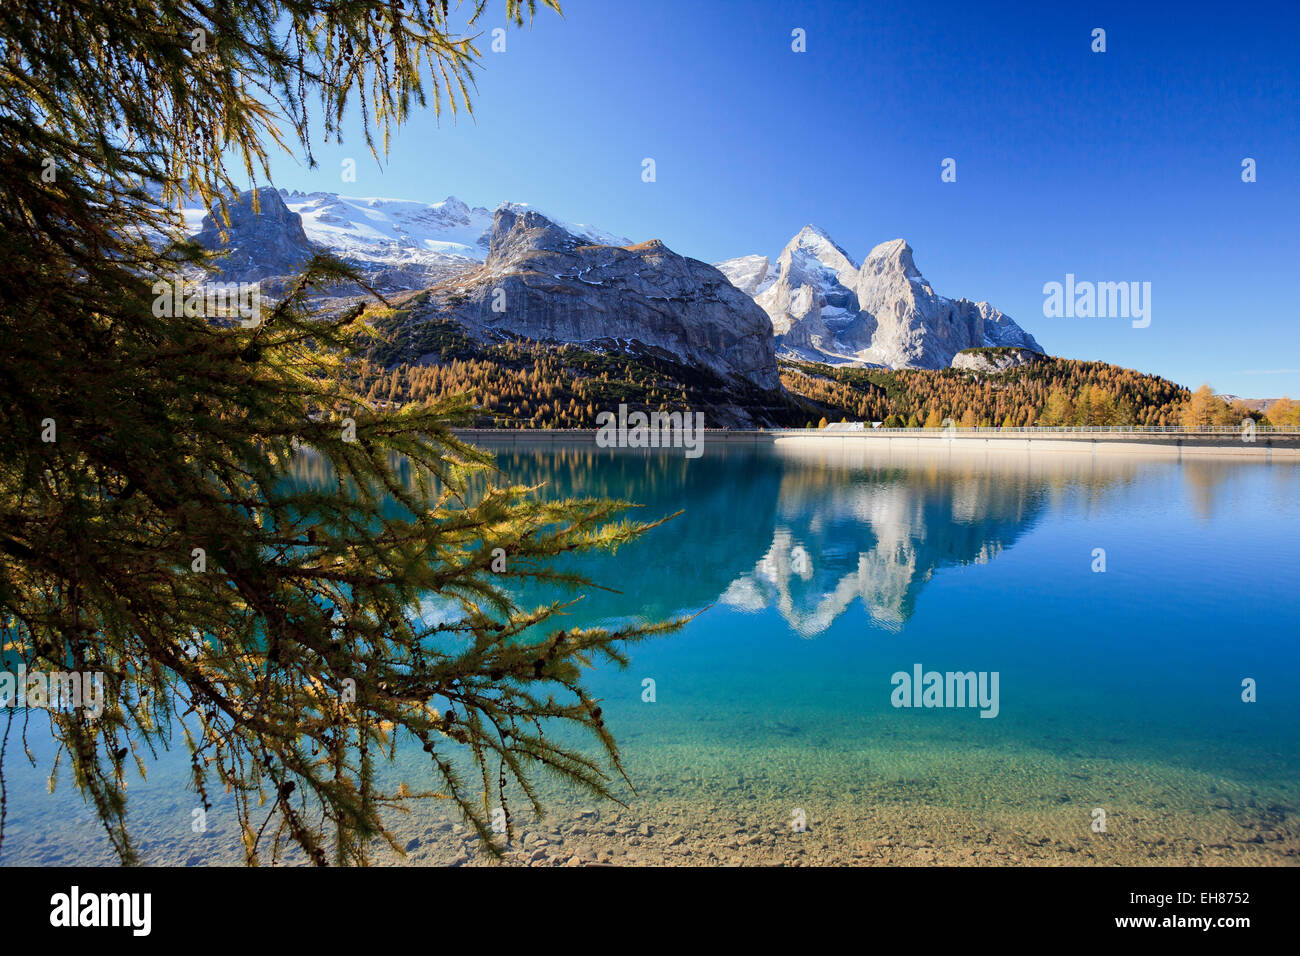 Il maestoso Gruppo della Marmolada e del Lago Fedaia con le sue acque turchesi, Dolomiti, Italia, Europa Foto Stock